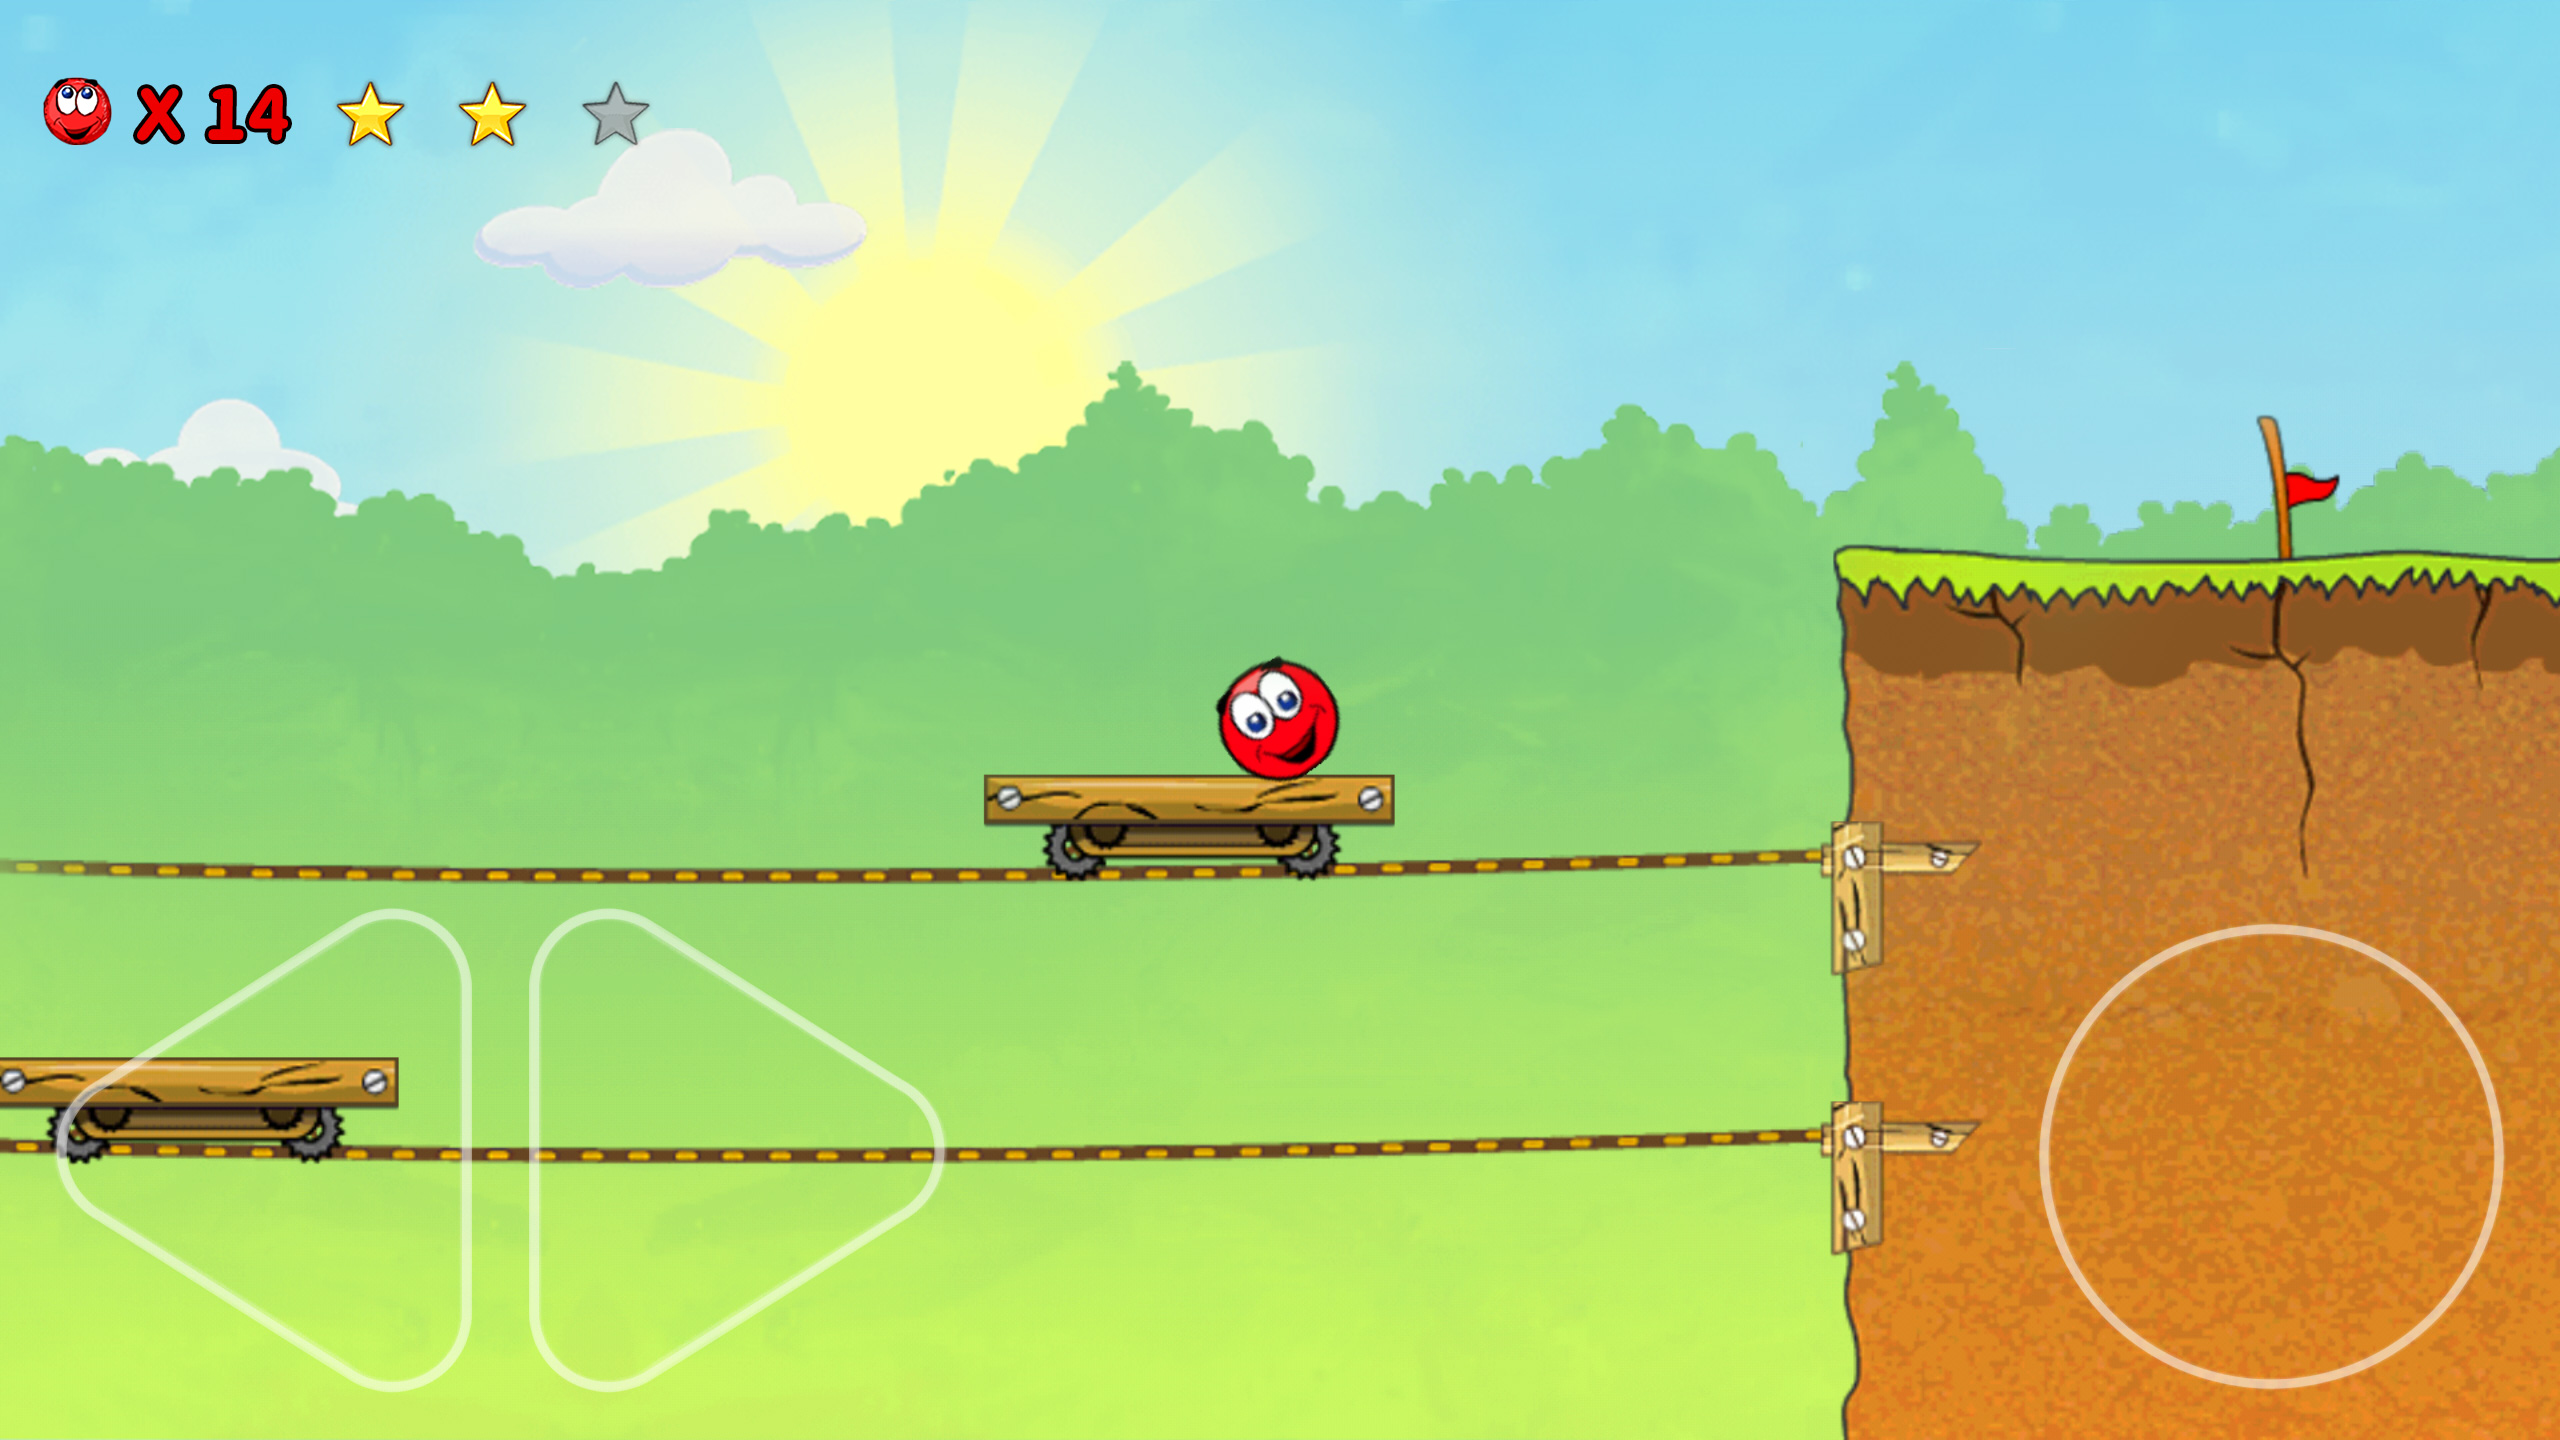 Бесплатные игры прыгающий шарик. Red Ball 3. Красный прыгающий шарик игра. Red baii 3. Красный мячик прыгает игра.